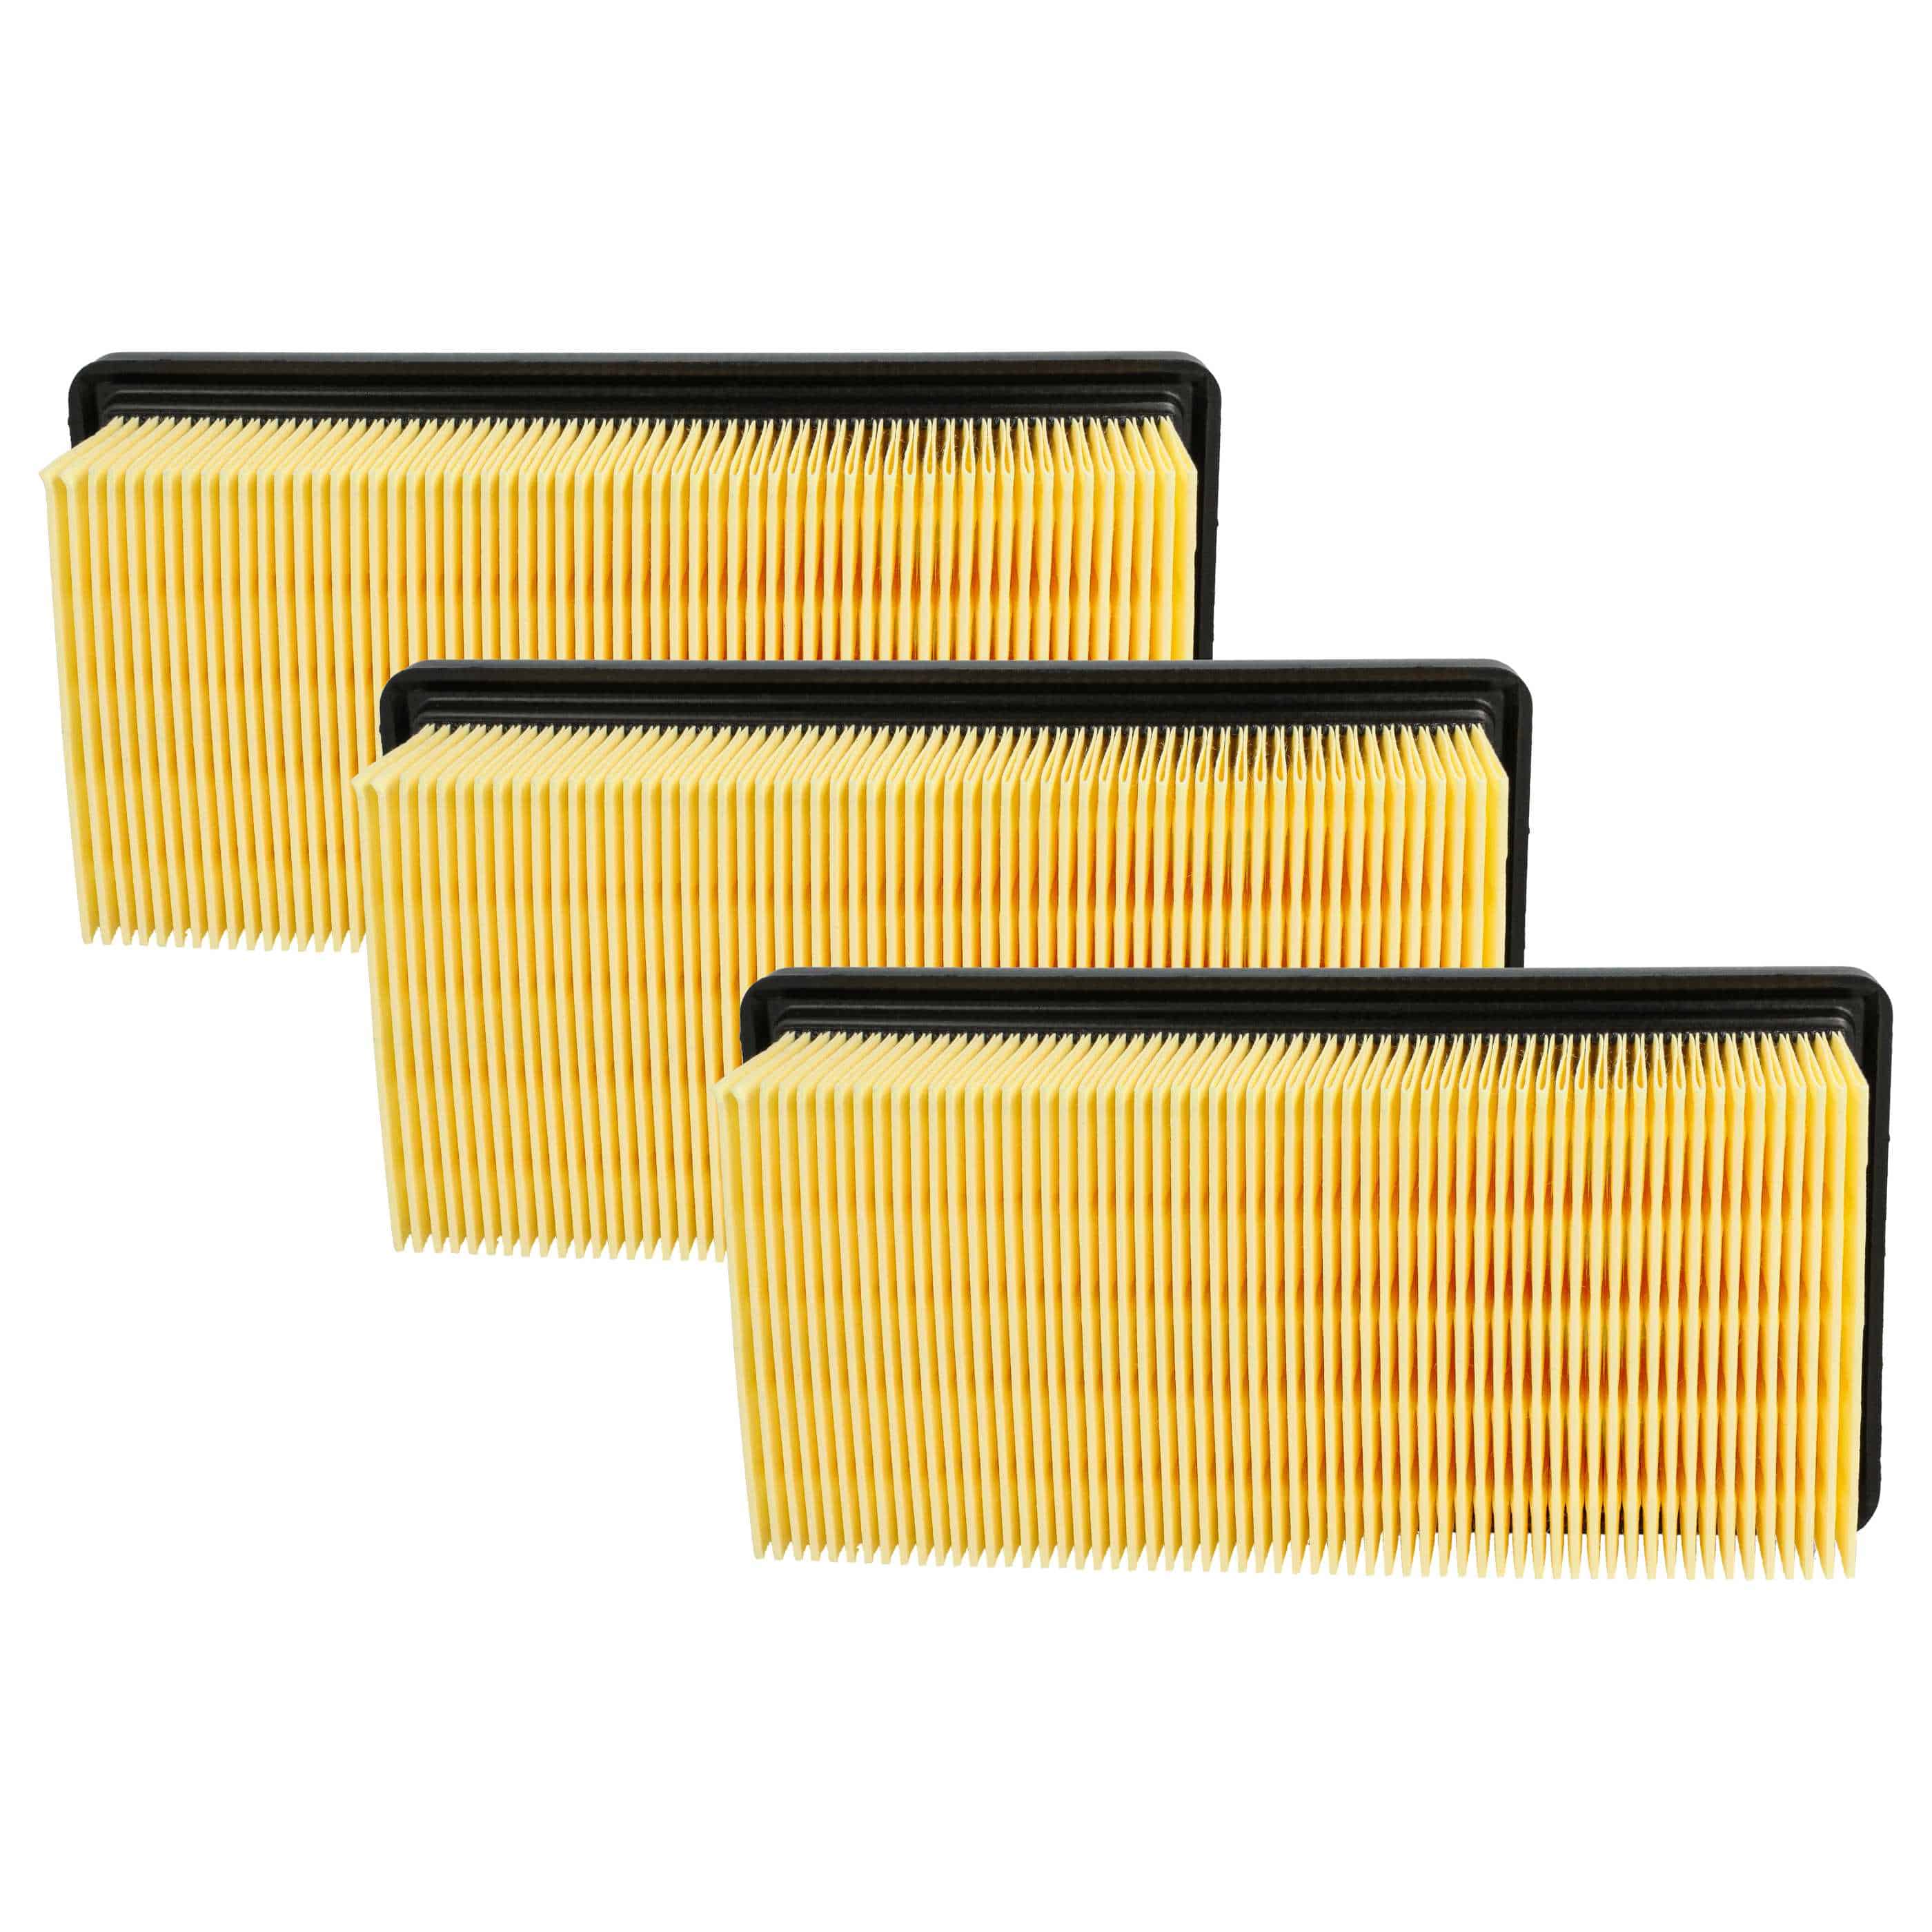 3x Filtre remplace Kärcher 6.414-971.0 pour aspirateur - filtre à plis plats